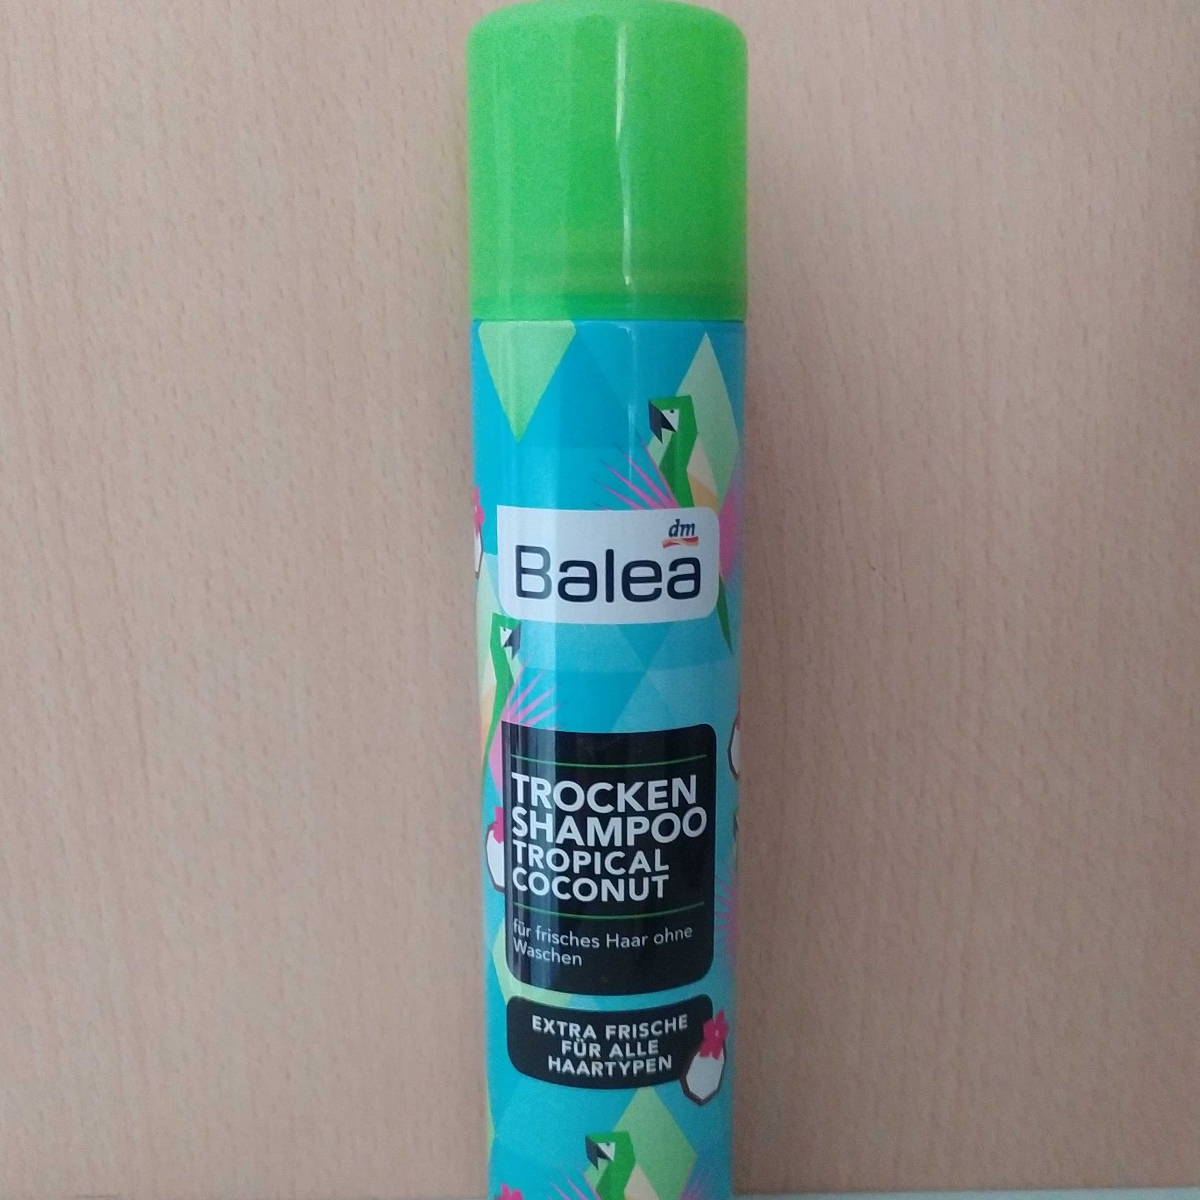 Balea Trocken Shampoo Tropical Coconut Review | abillion